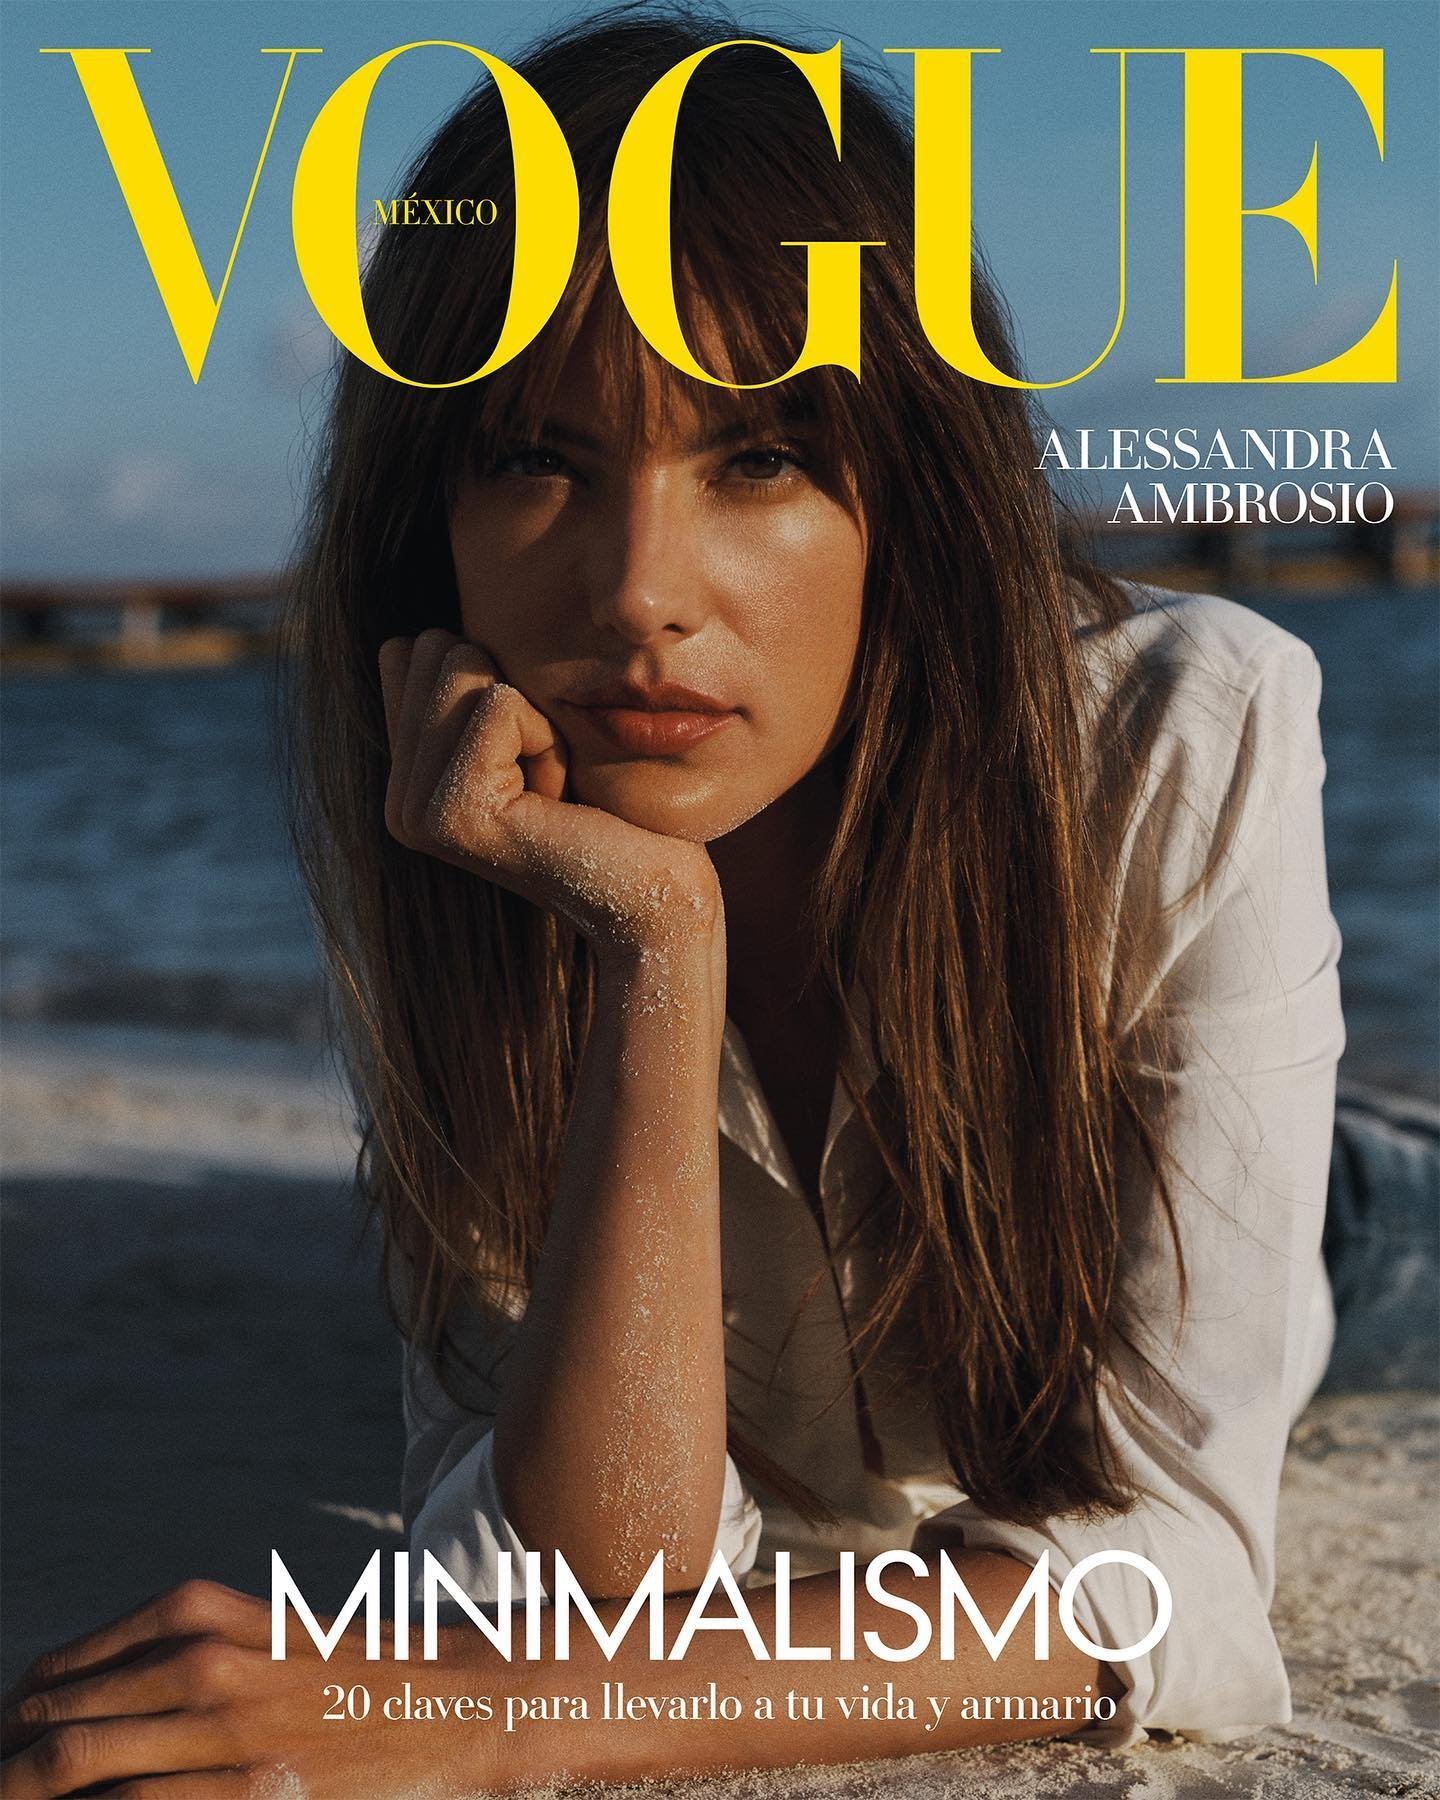 Alessandra-Ambrosio-by-Blair-Getz-Mezibov-Vogue-Mexico-2023-00004.jpg